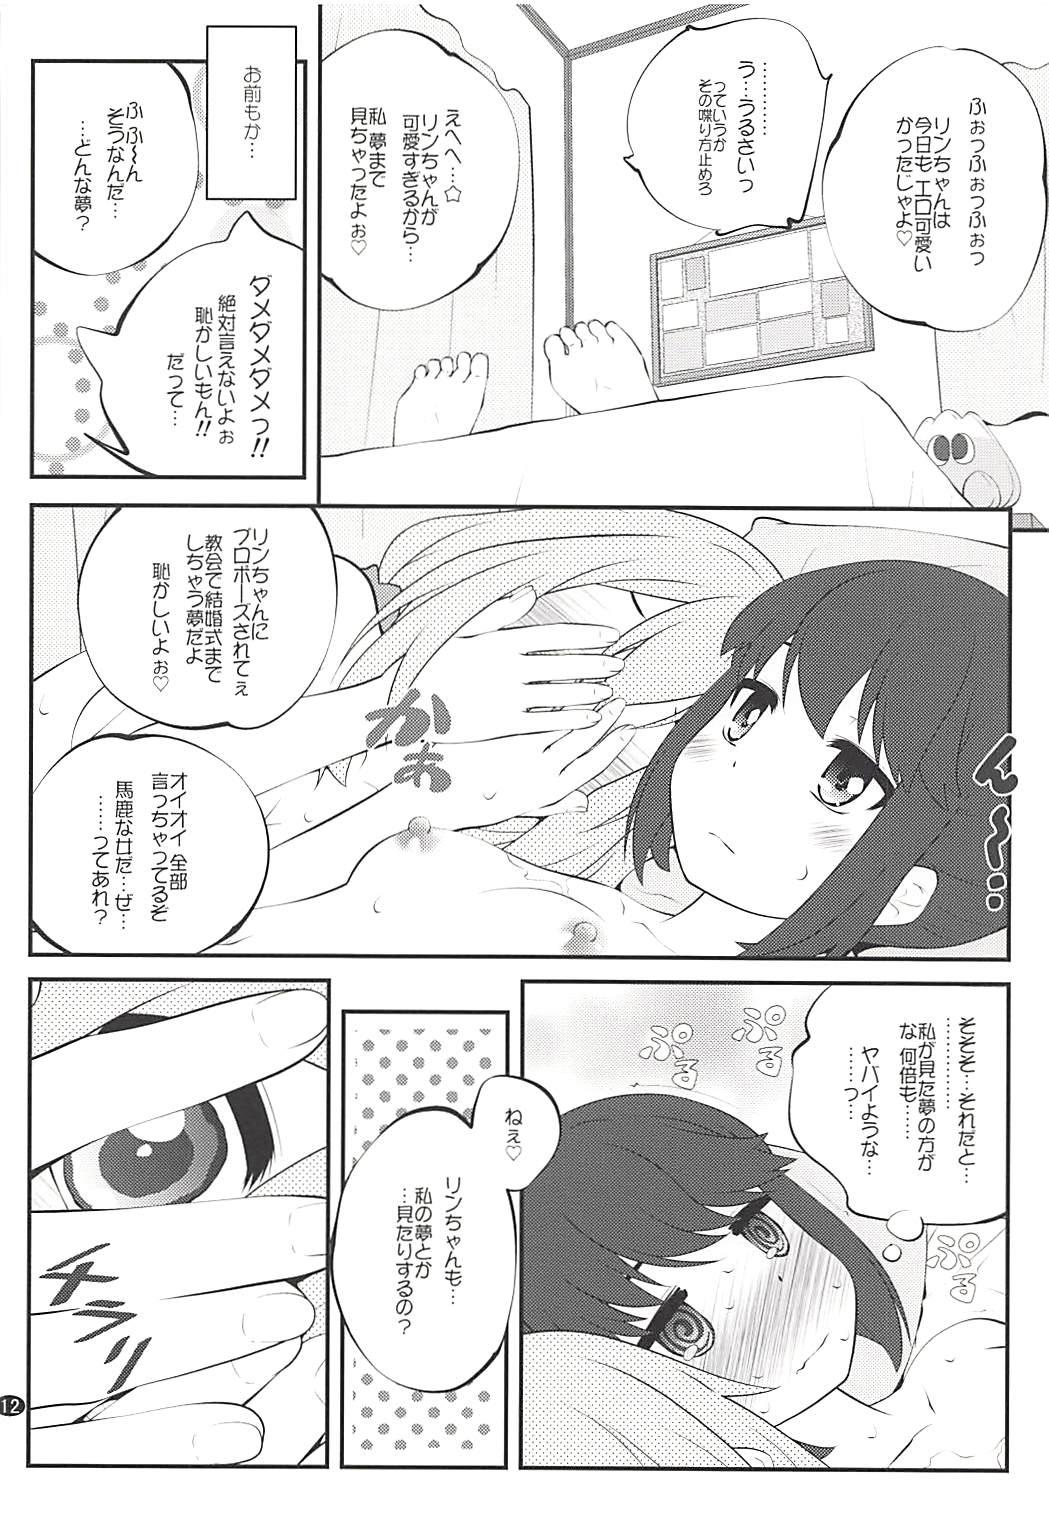 Peitos Sankakkei no, Himitsu - Yuru camp Exposed - Page 11